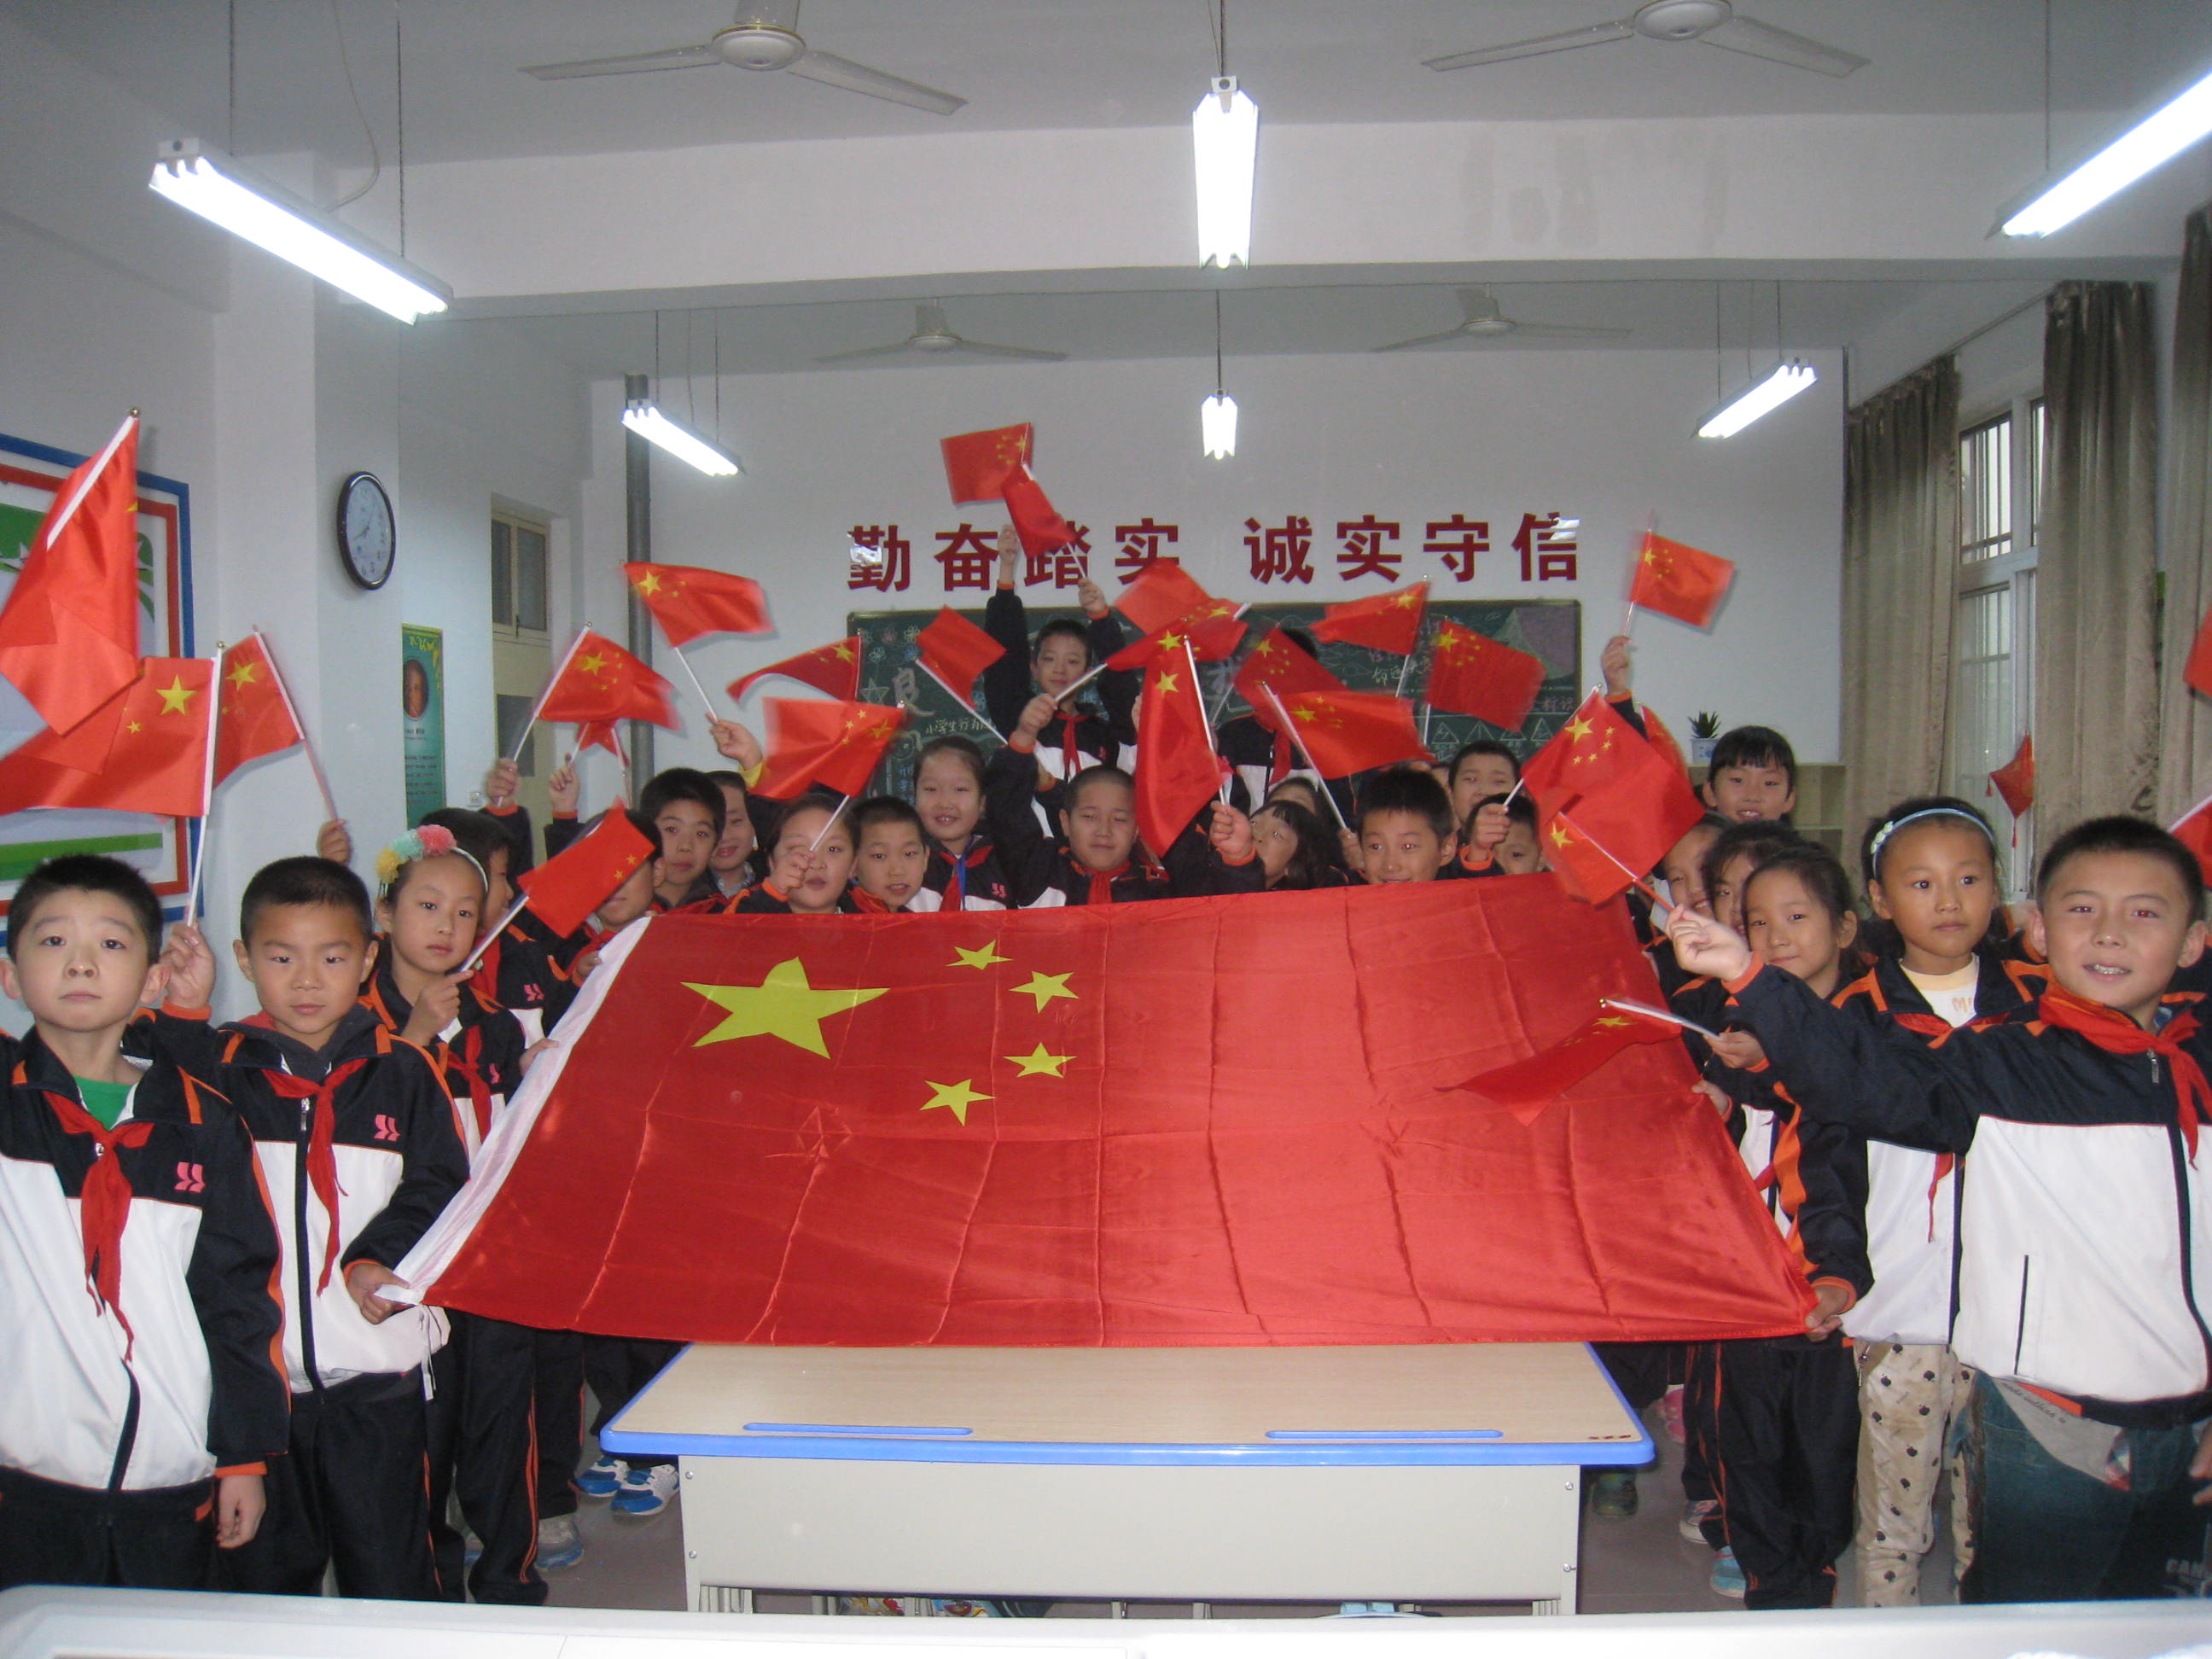 我与国旗合张影 - 2014中国北京国际少年儿童